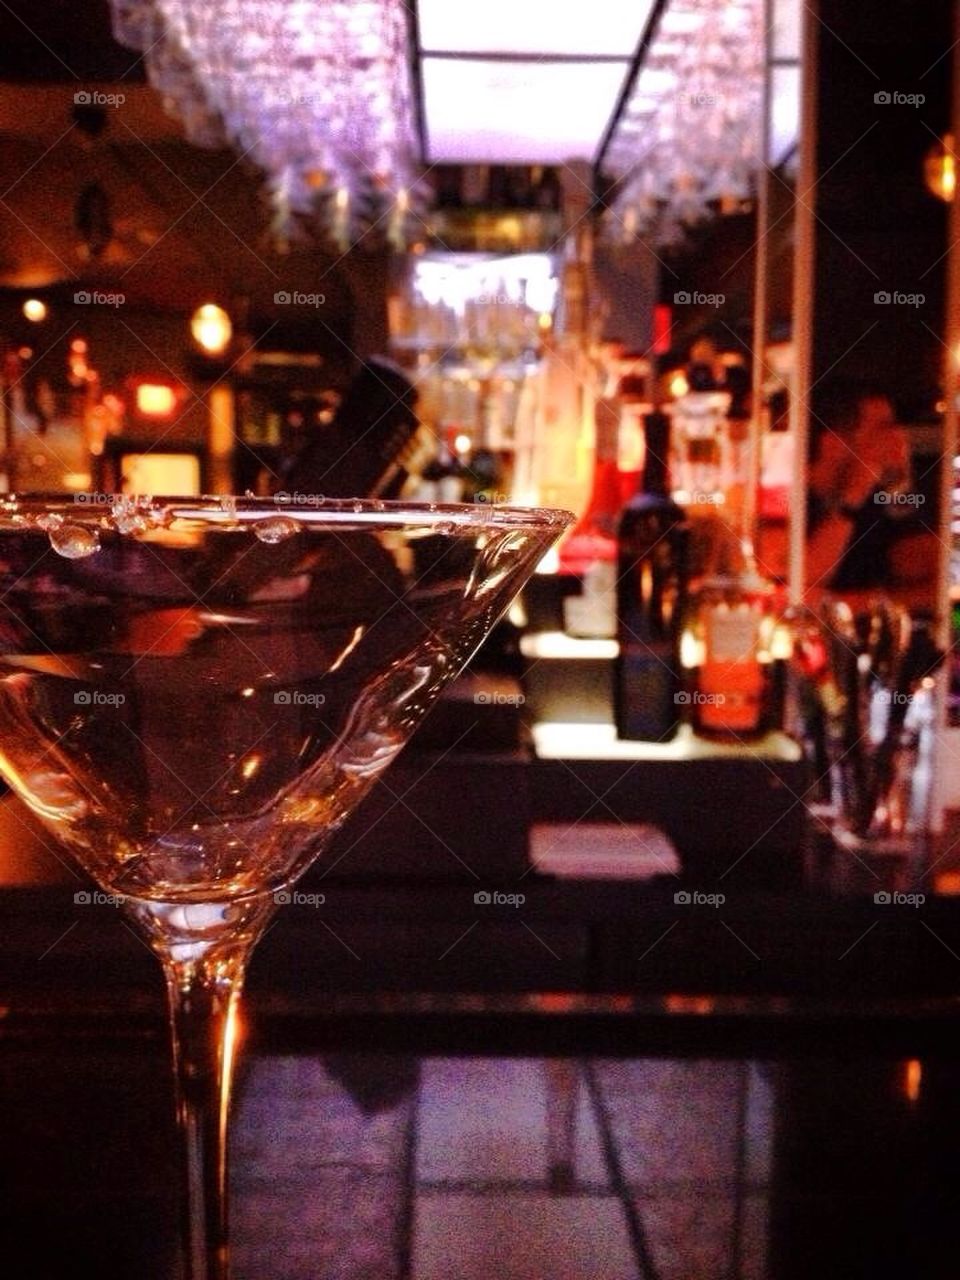 Martini glass